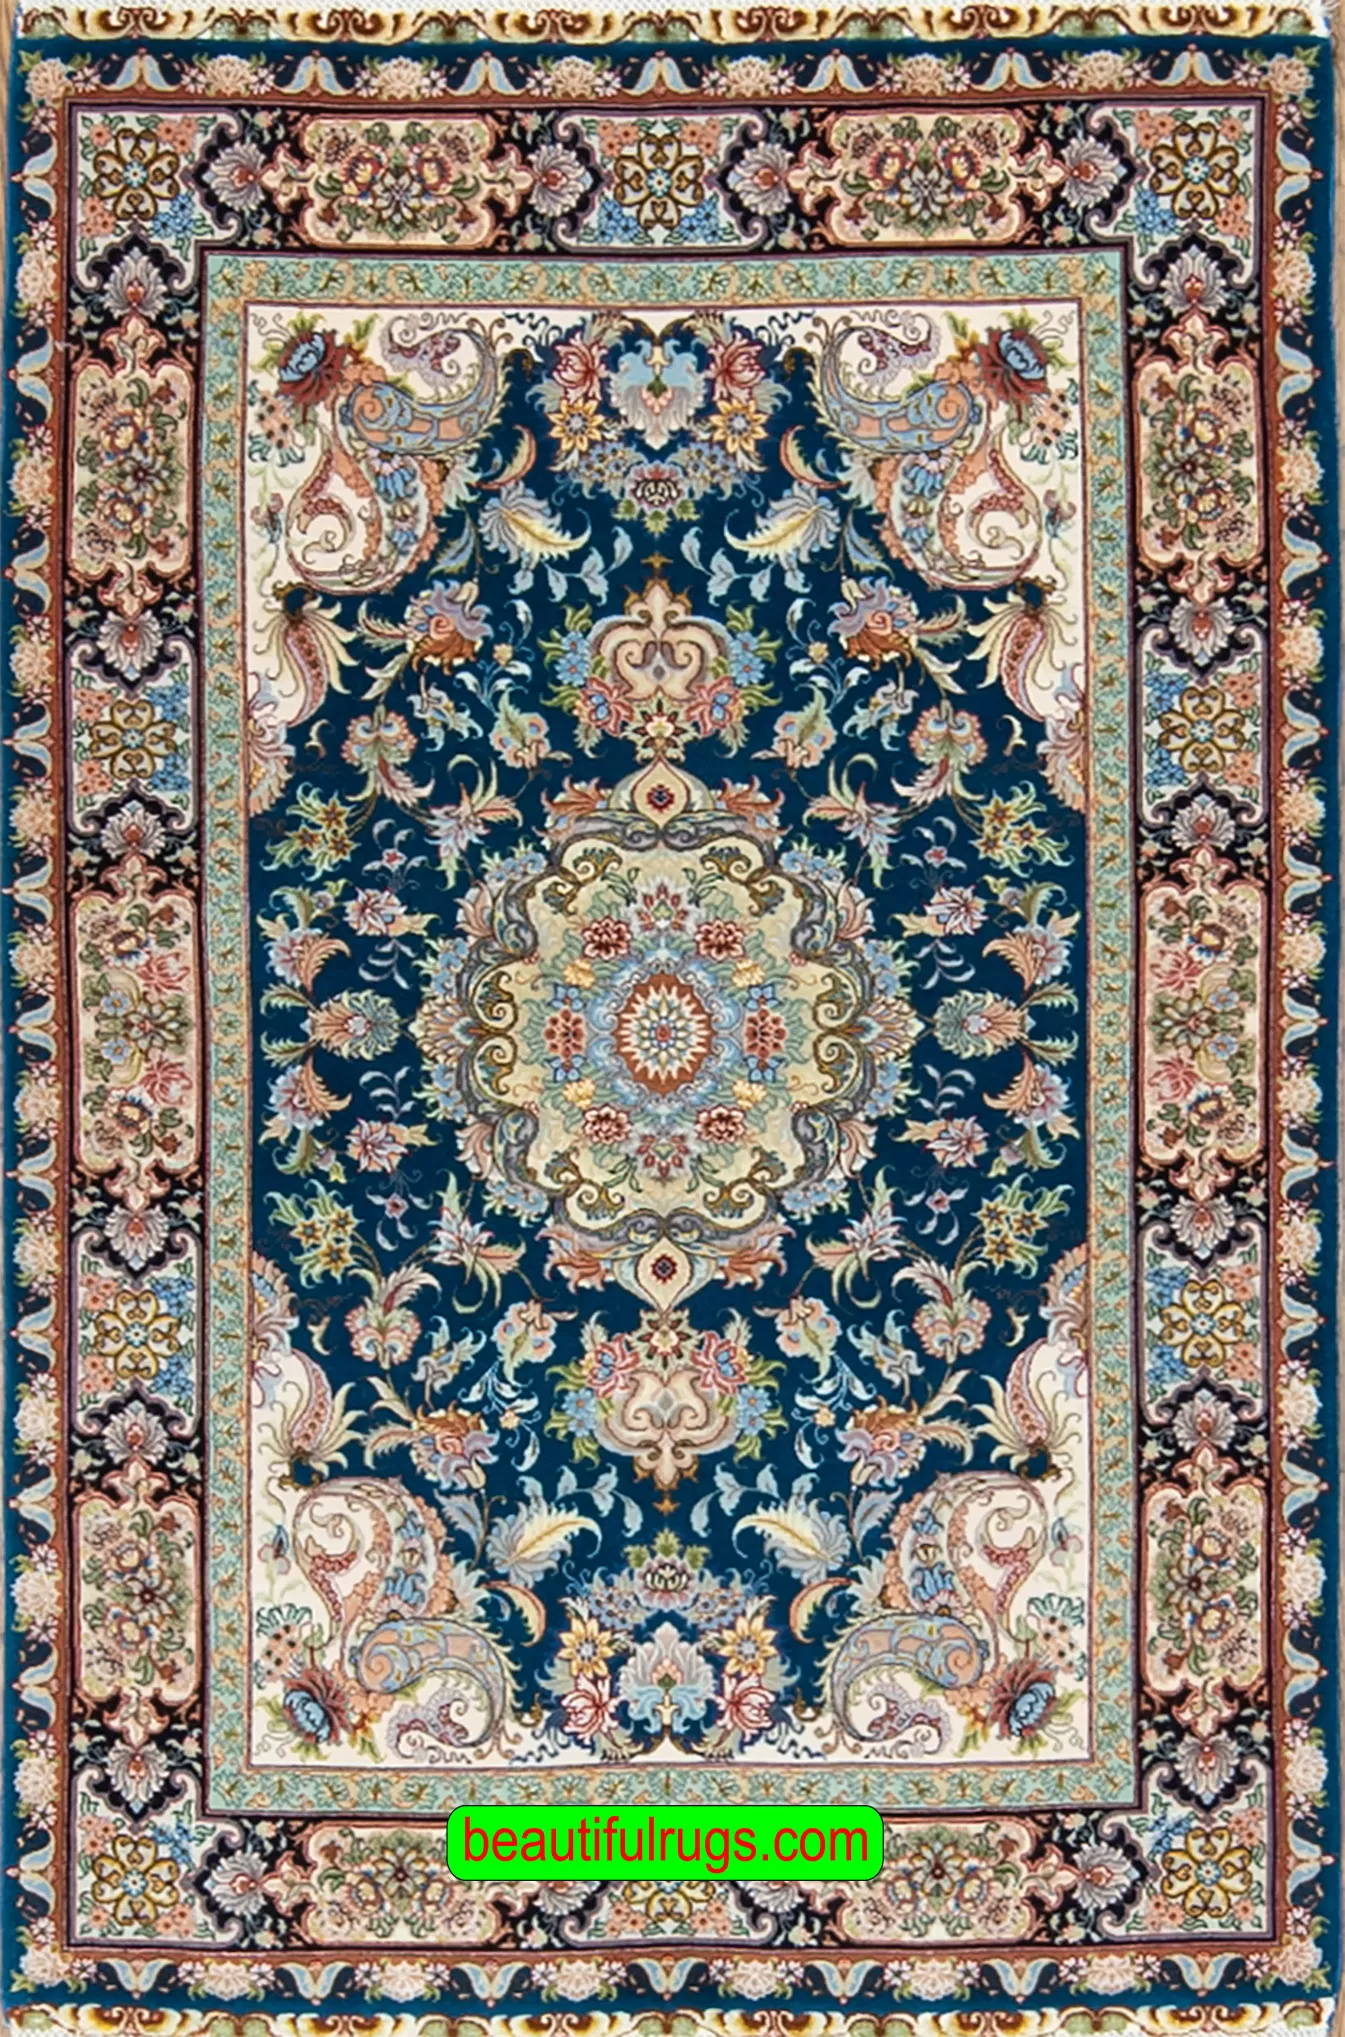 Handmade Rug, Persian Tabriz Rug, Teal Green Rug, Kurk wool and Silk Rug. Size 3.4x5.4